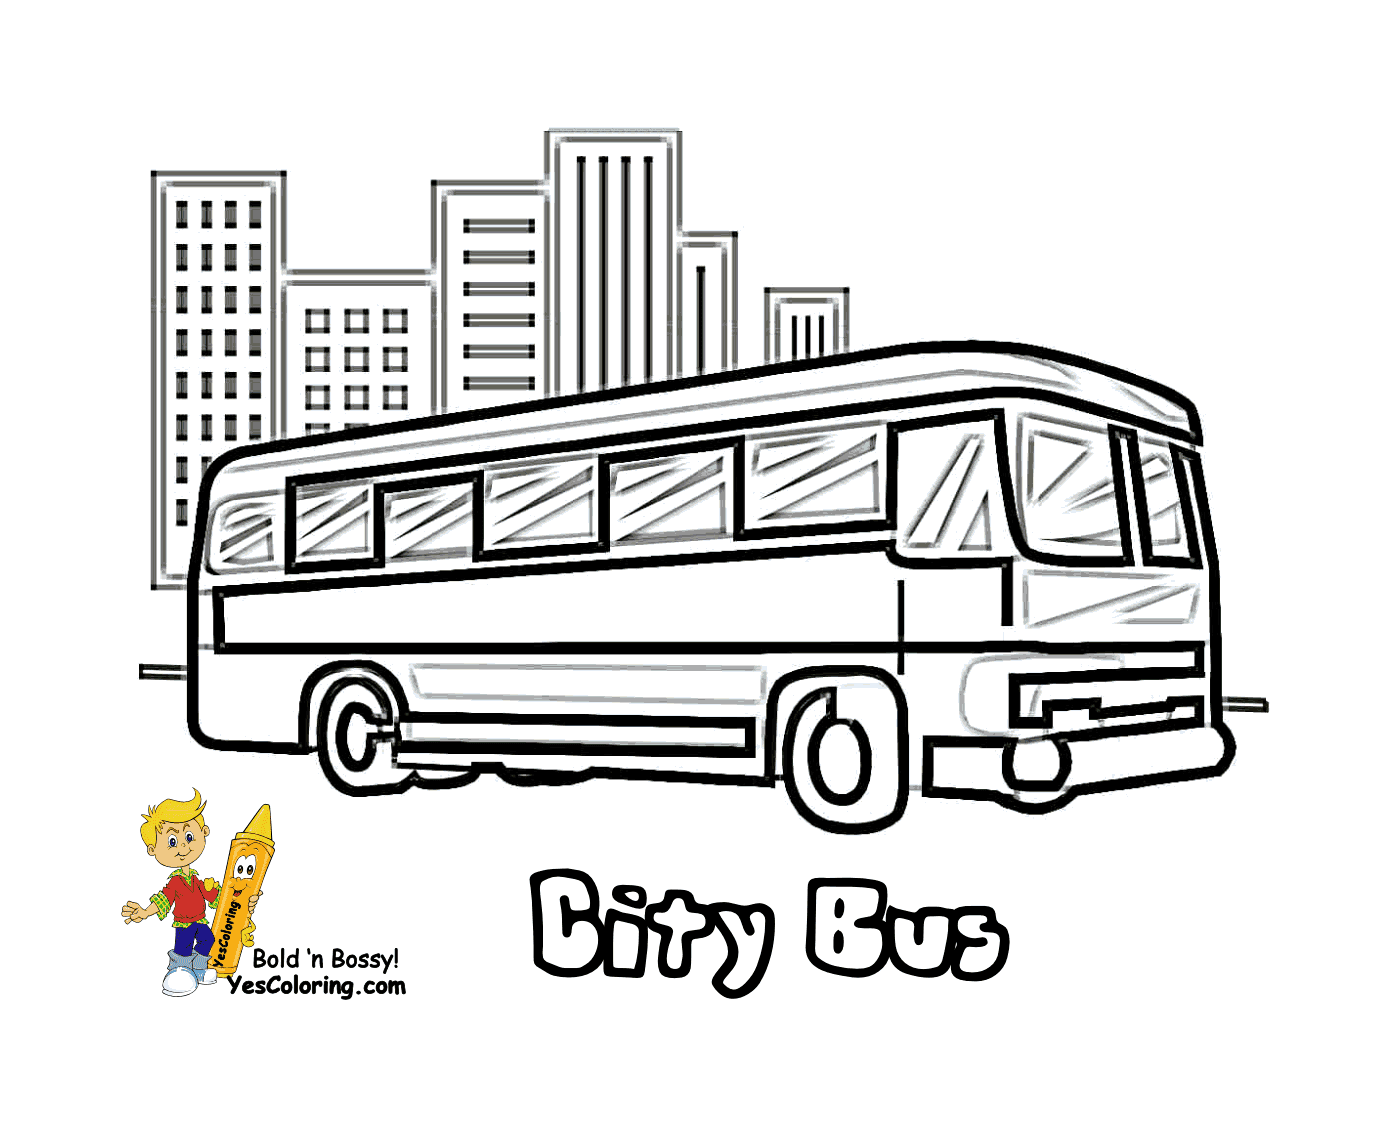  Un autobus urbano gira per la città 